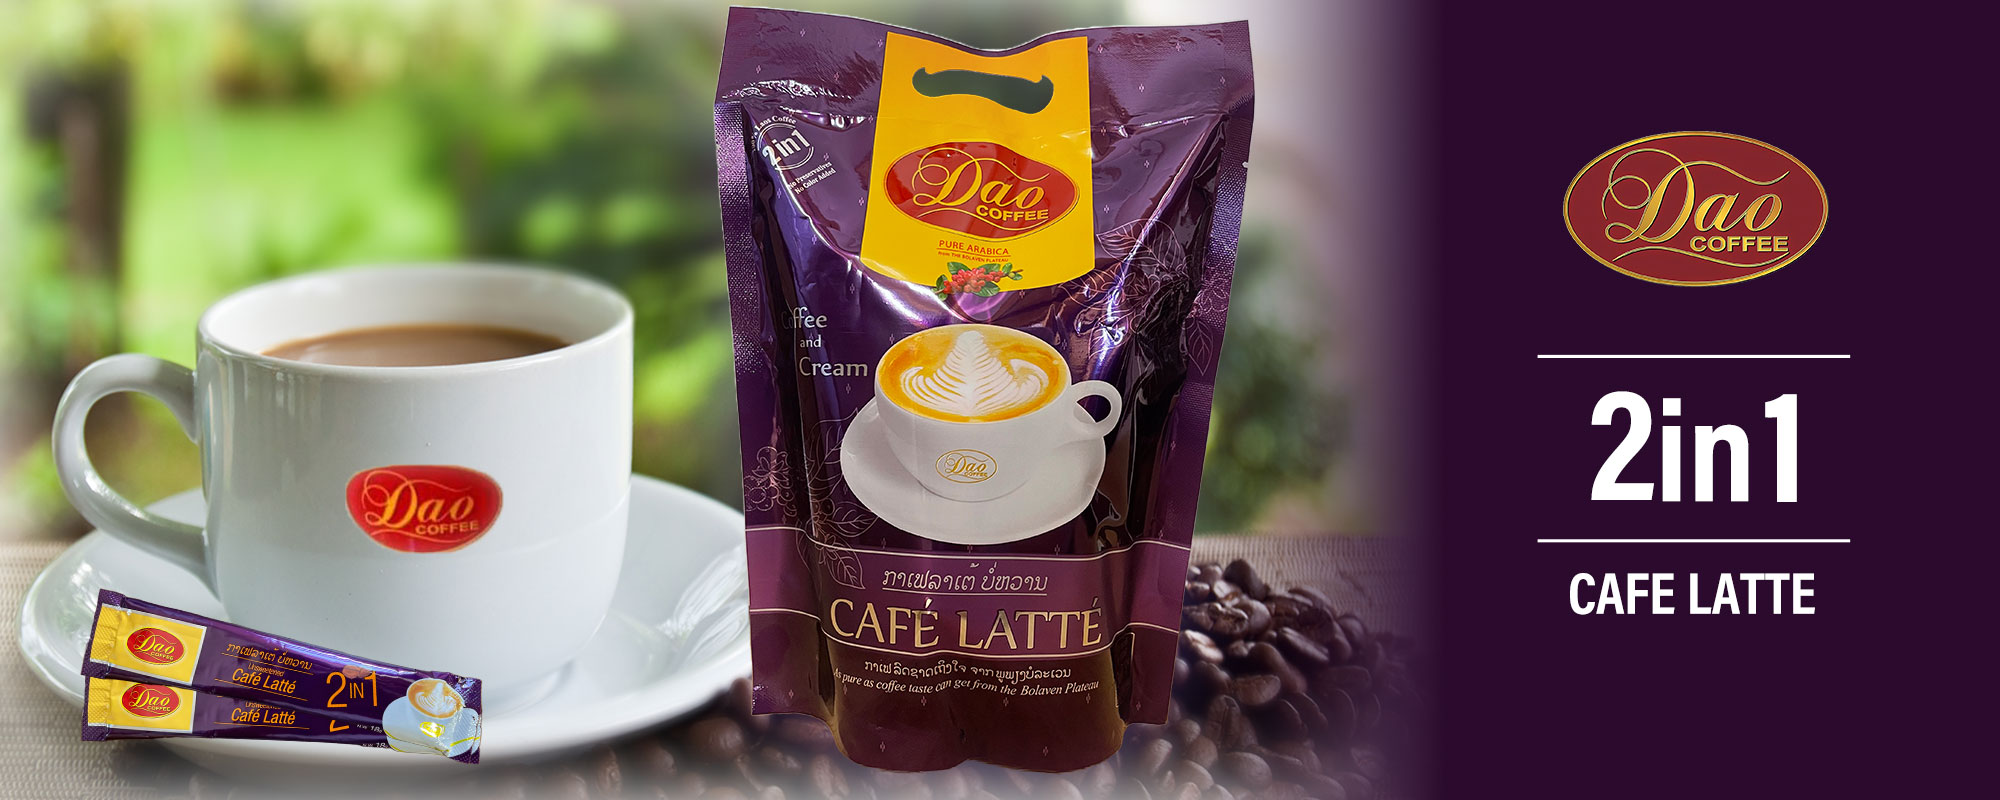 2in1 Cafe Latte